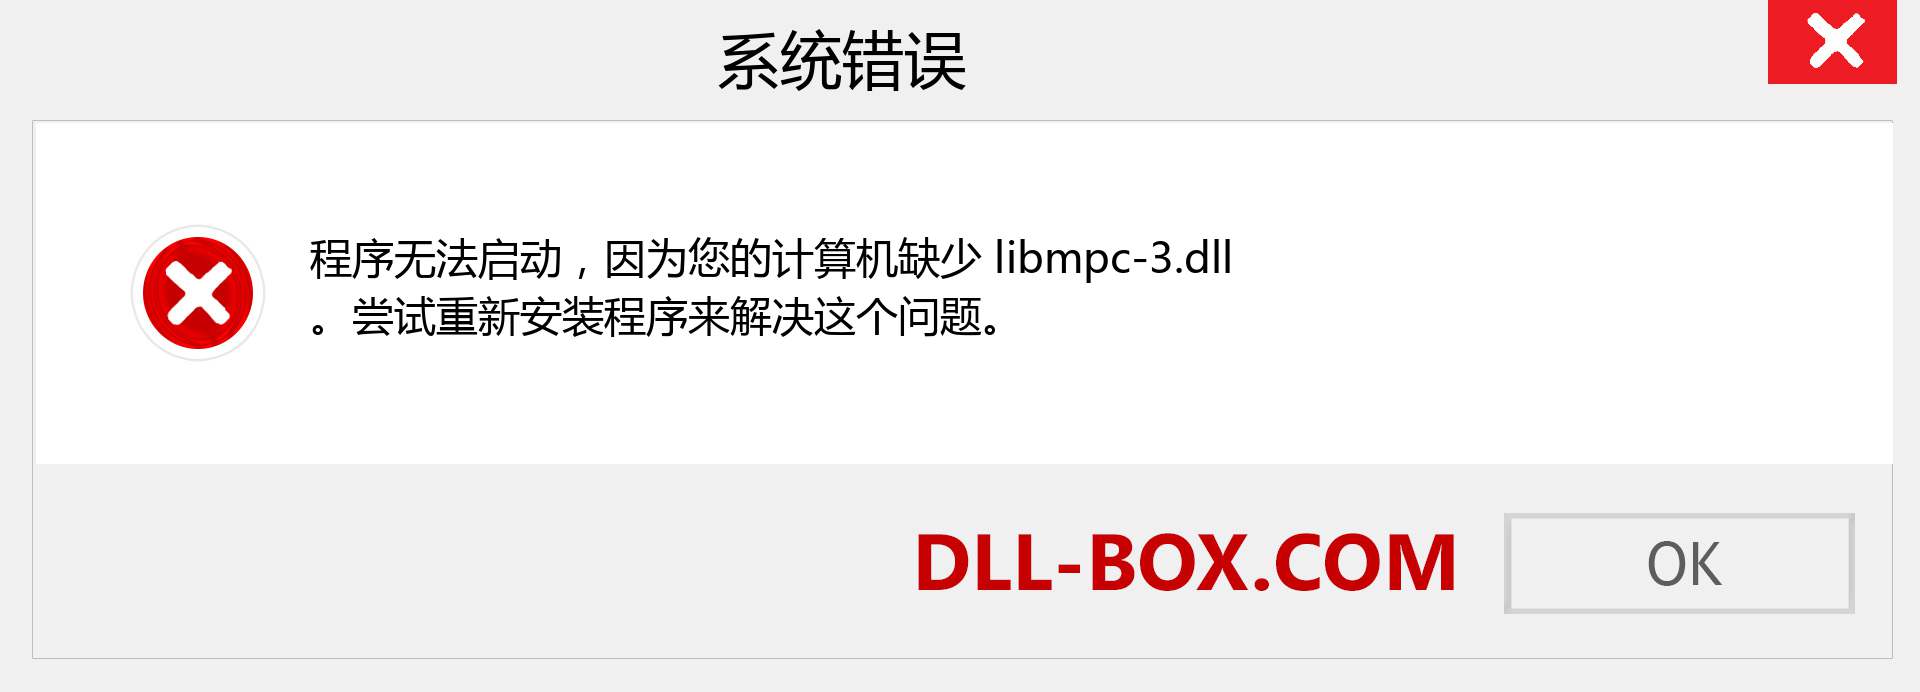 libmpc-3.dll 文件丢失？。 适用于 Windows 7、8、10 的下载 - 修复 Windows、照片、图像上的 libmpc-3 dll 丢失错误